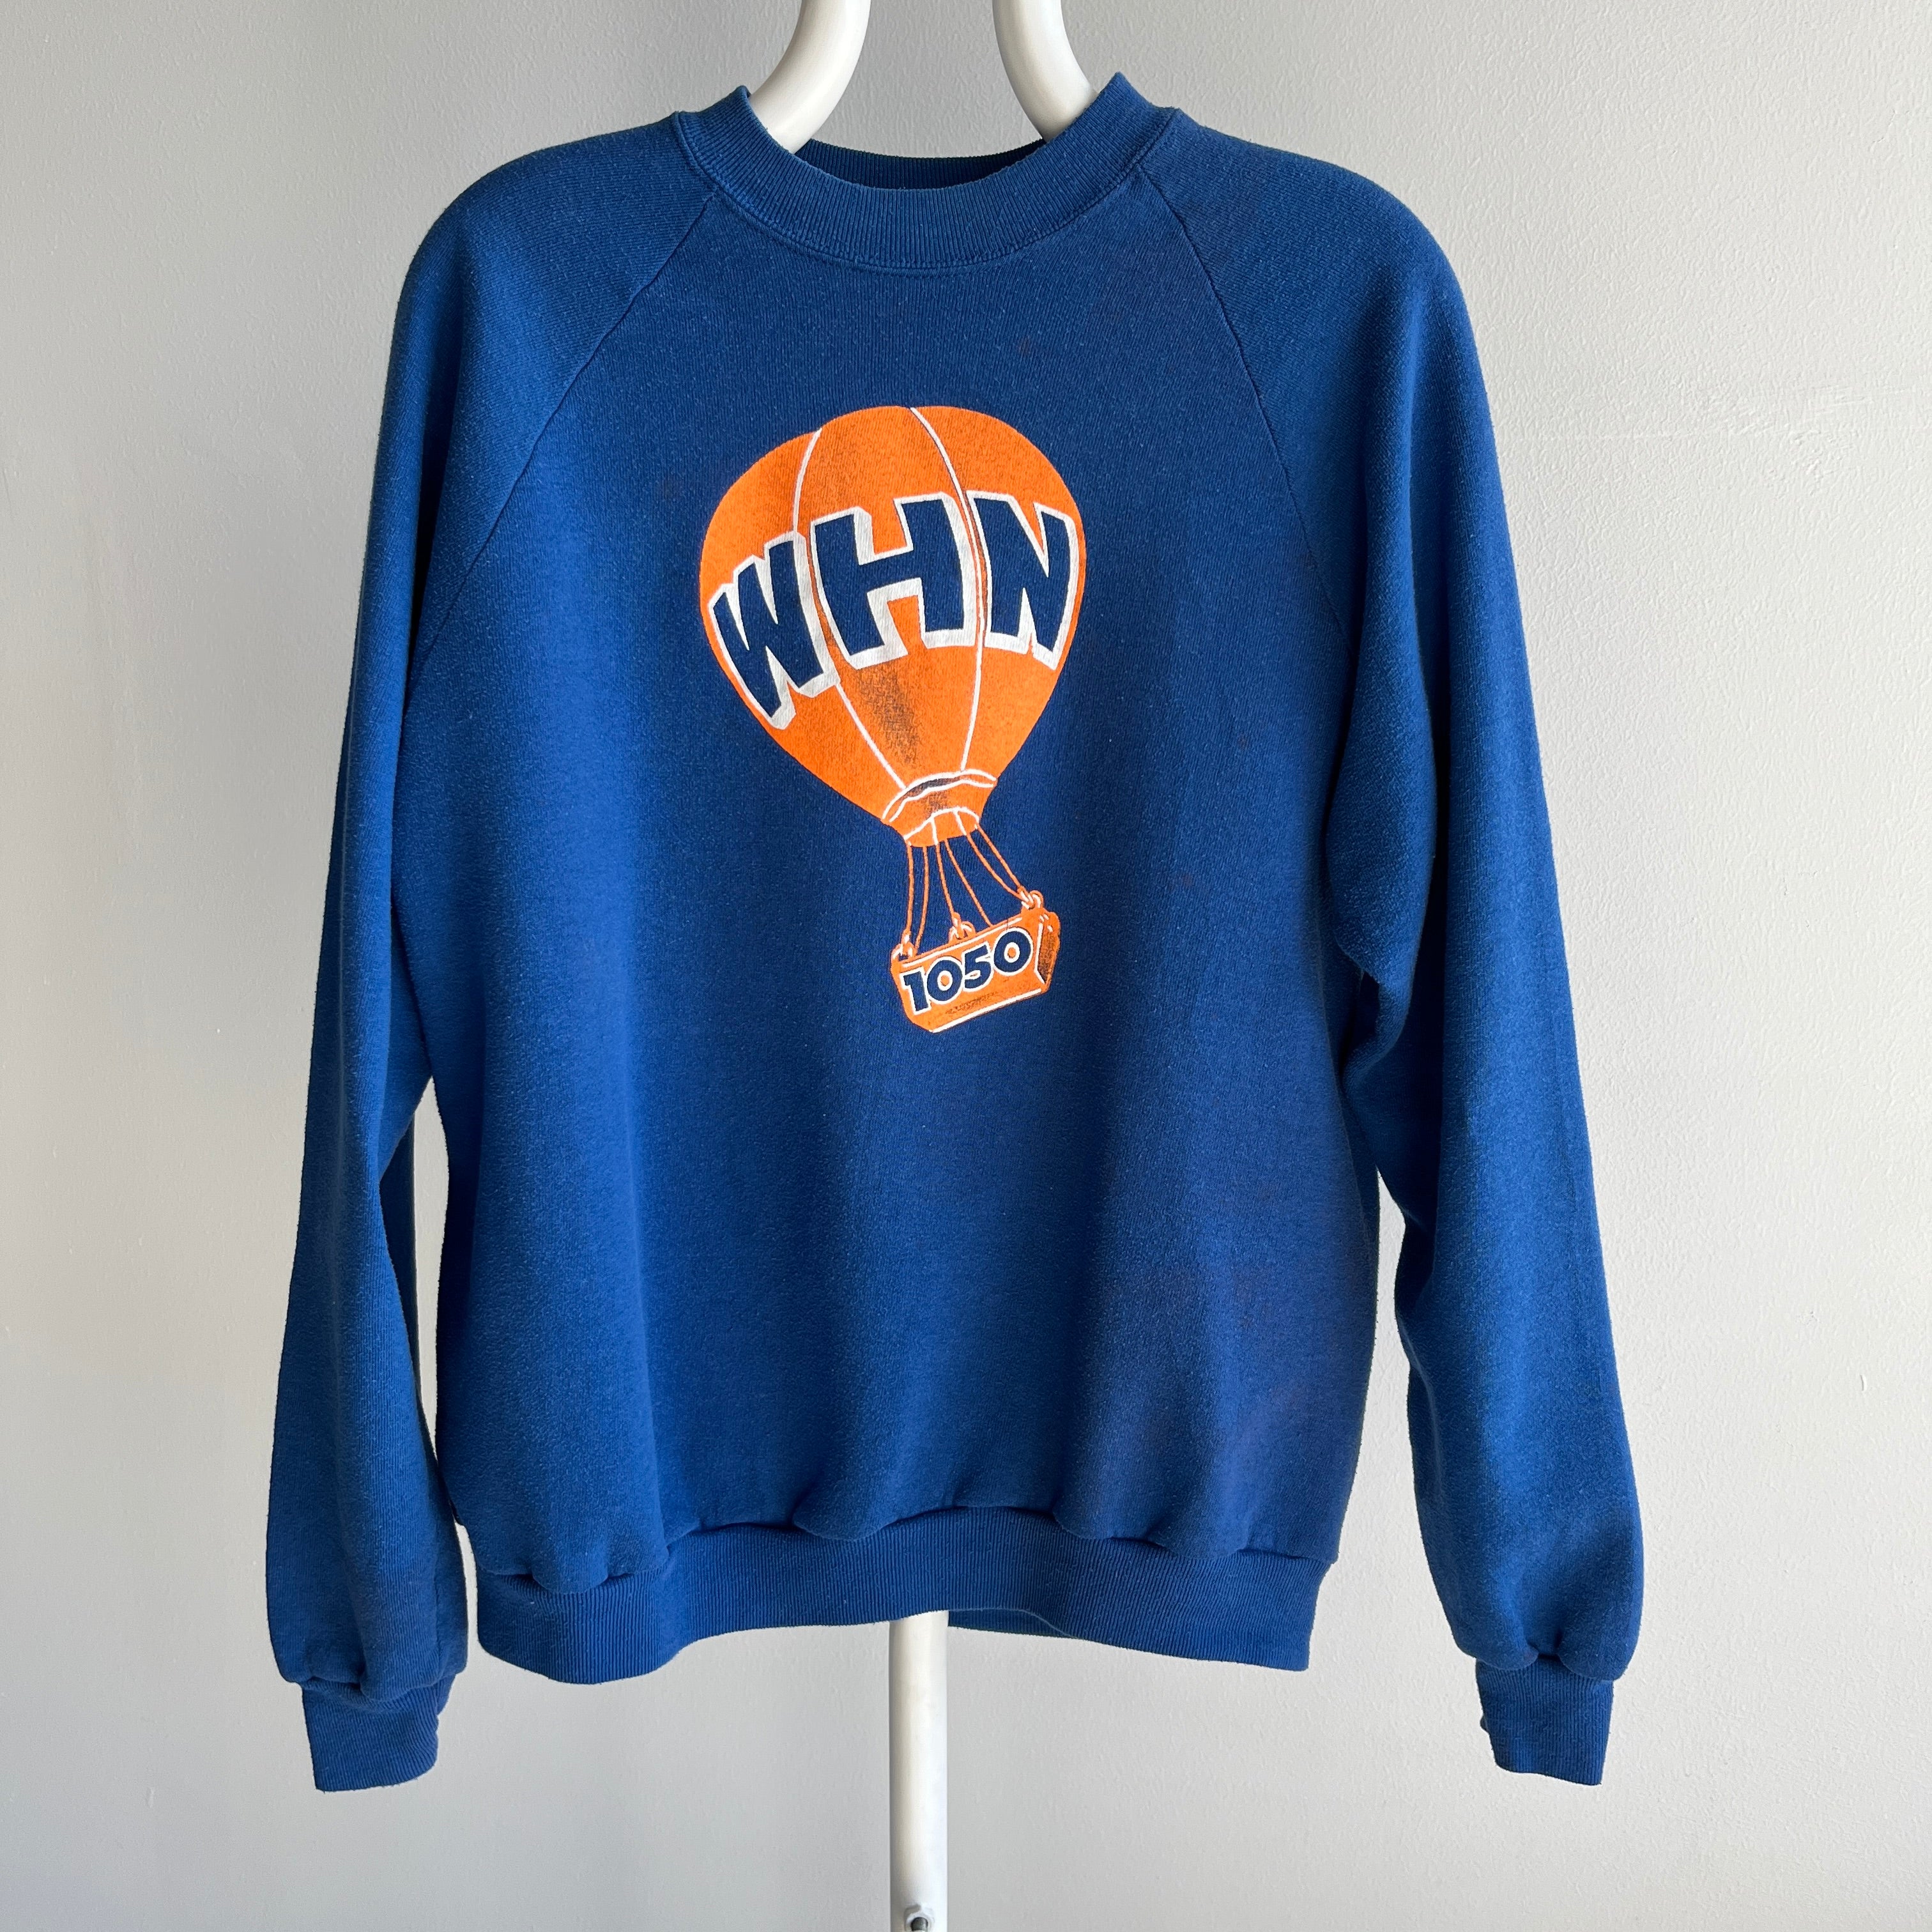 1980s WHN AM 1050 Sweatshirt _ NYC